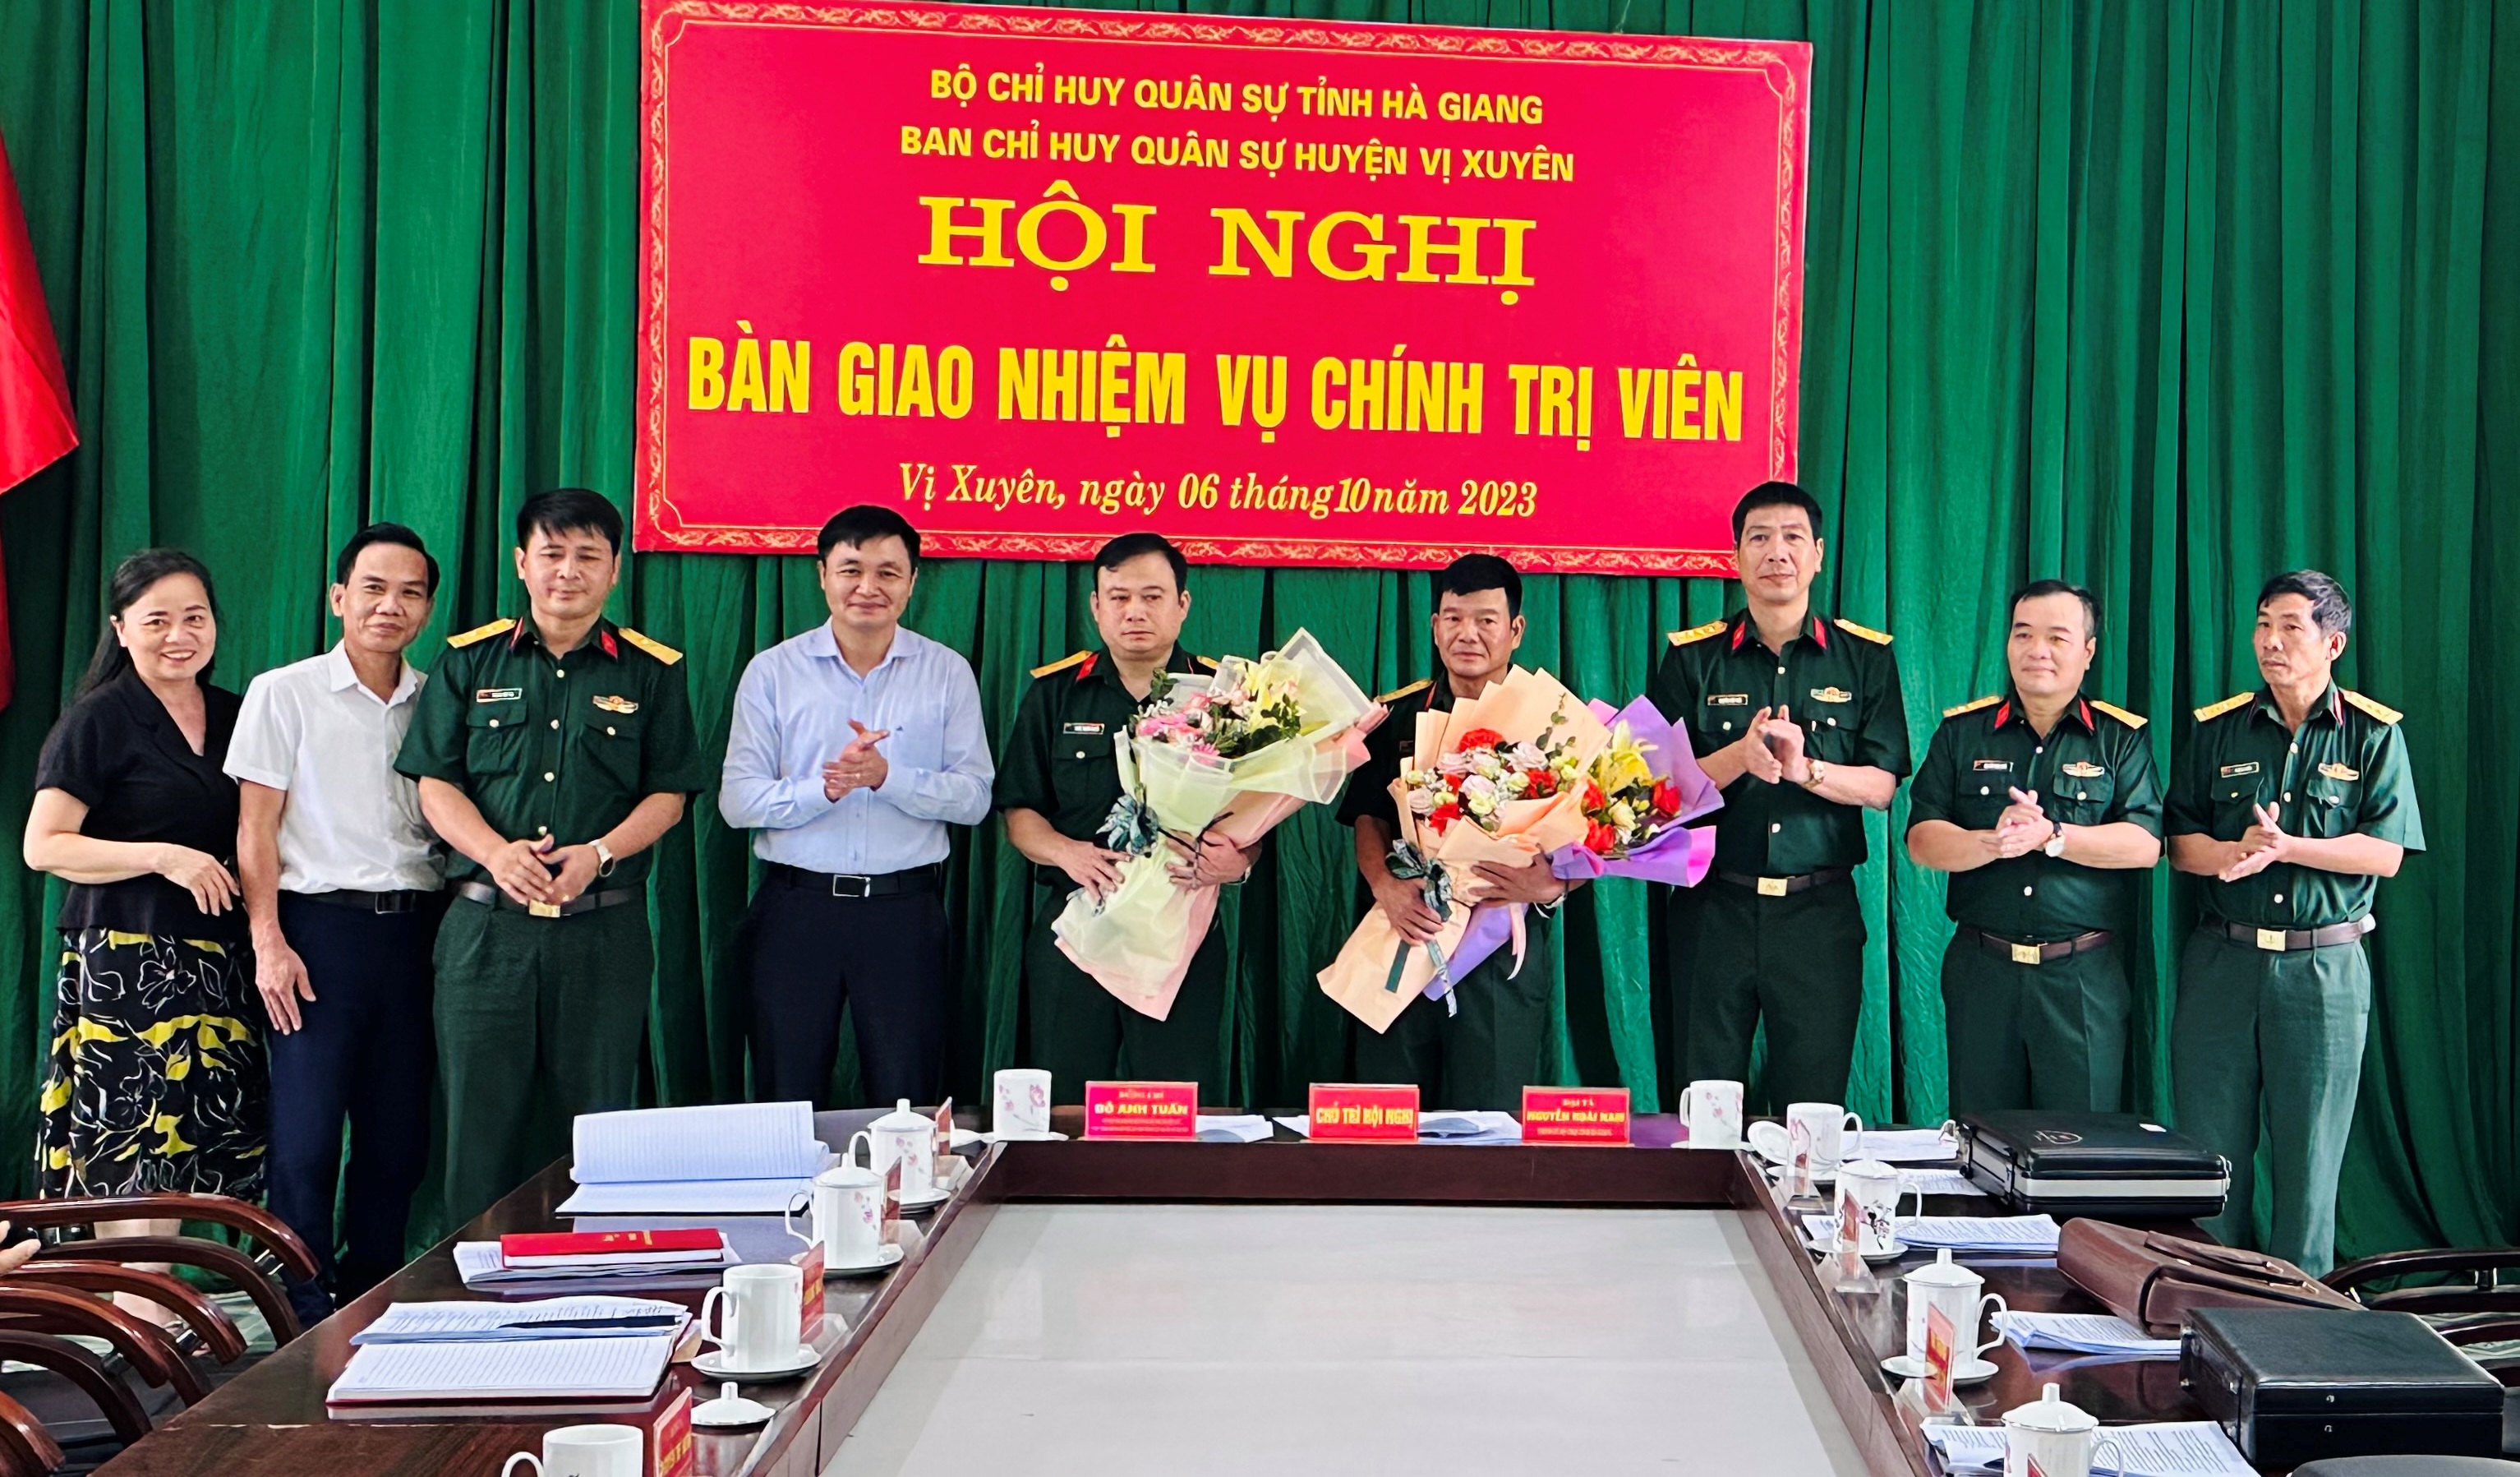 Hội nghị bàn giao nhiệm vụ chính trị viên BCH Quân sự huyện Vị Xuyên